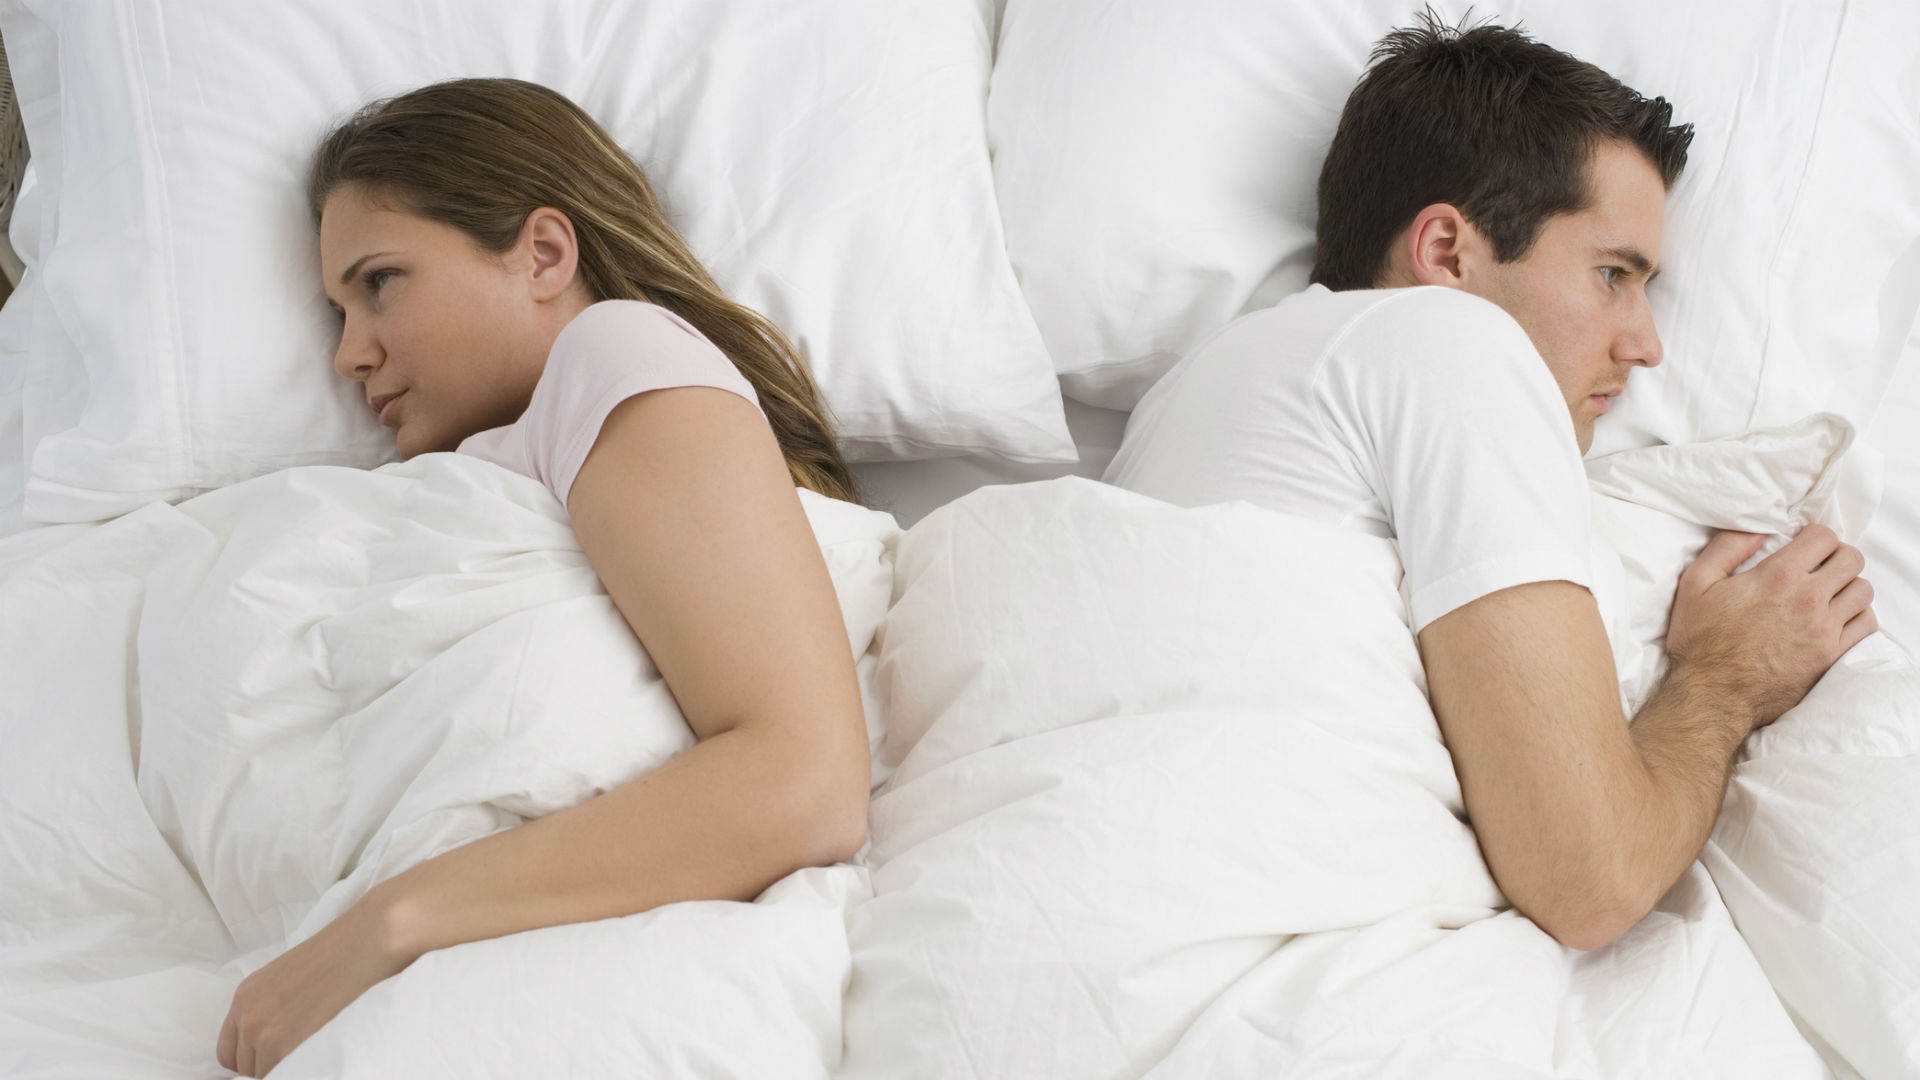 Tu pareja te da la espalda mientras duermen? Entonces podría ser infiel